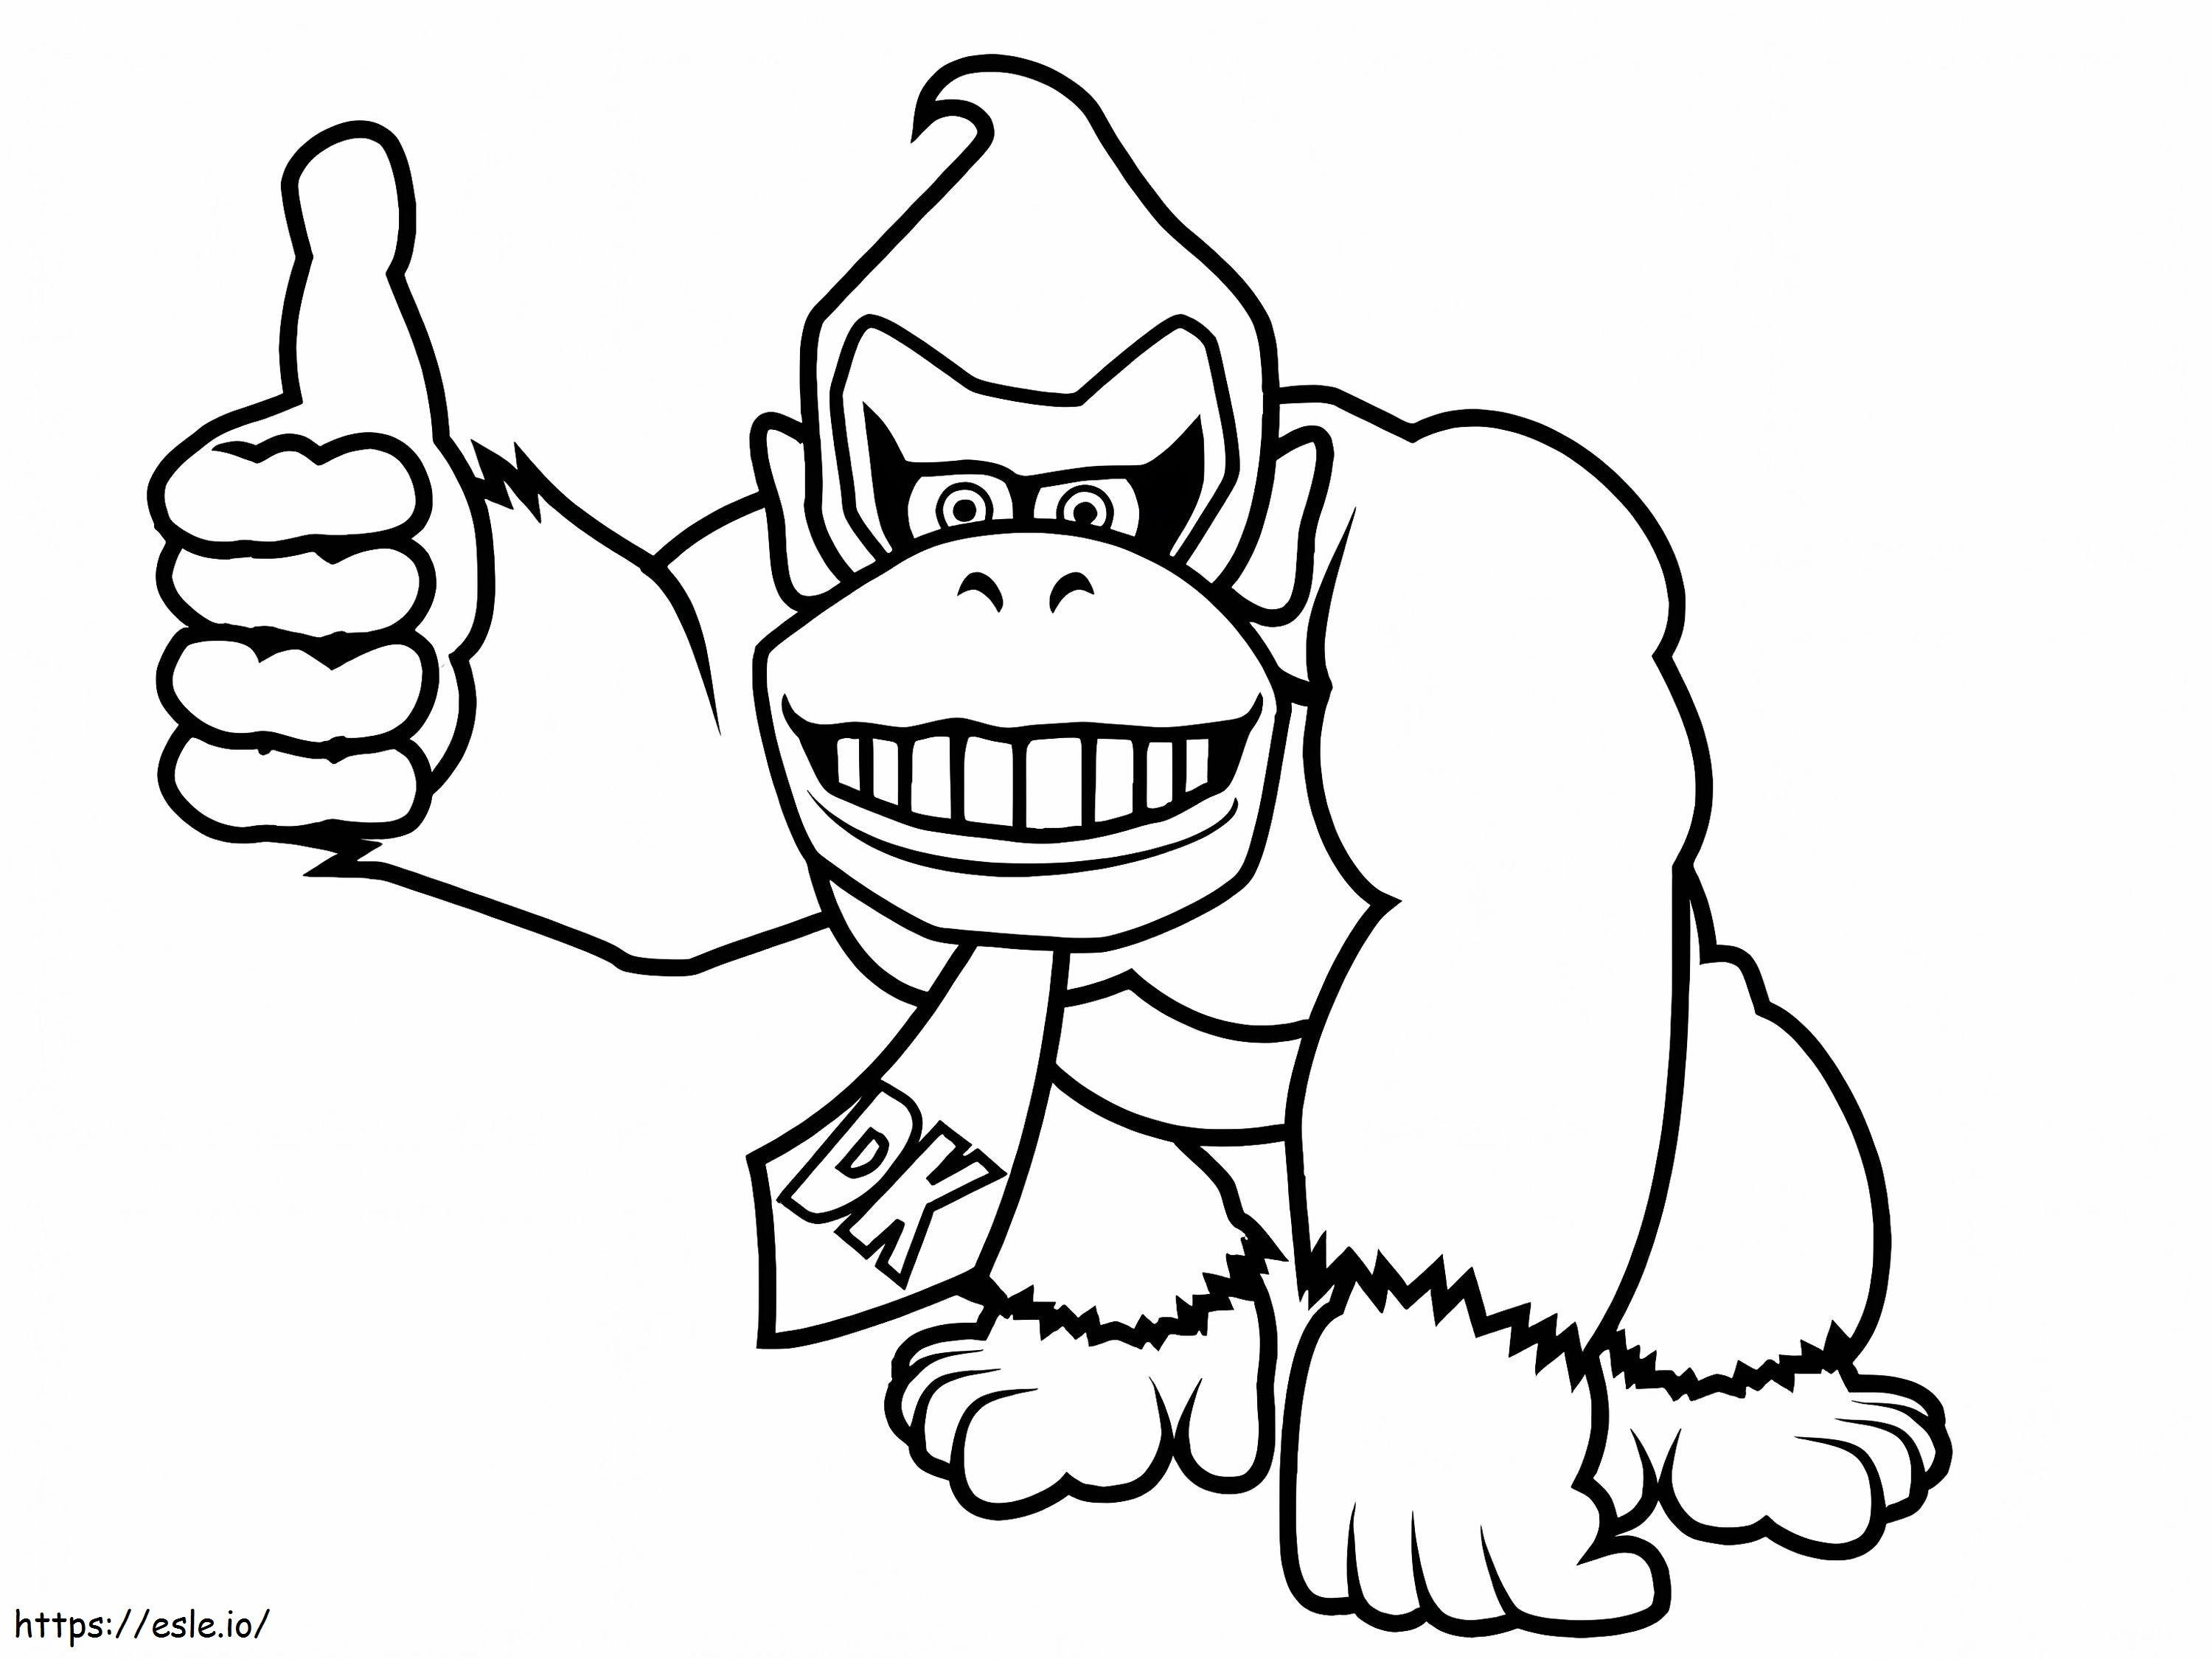 Donkey Kong como tú para colorear